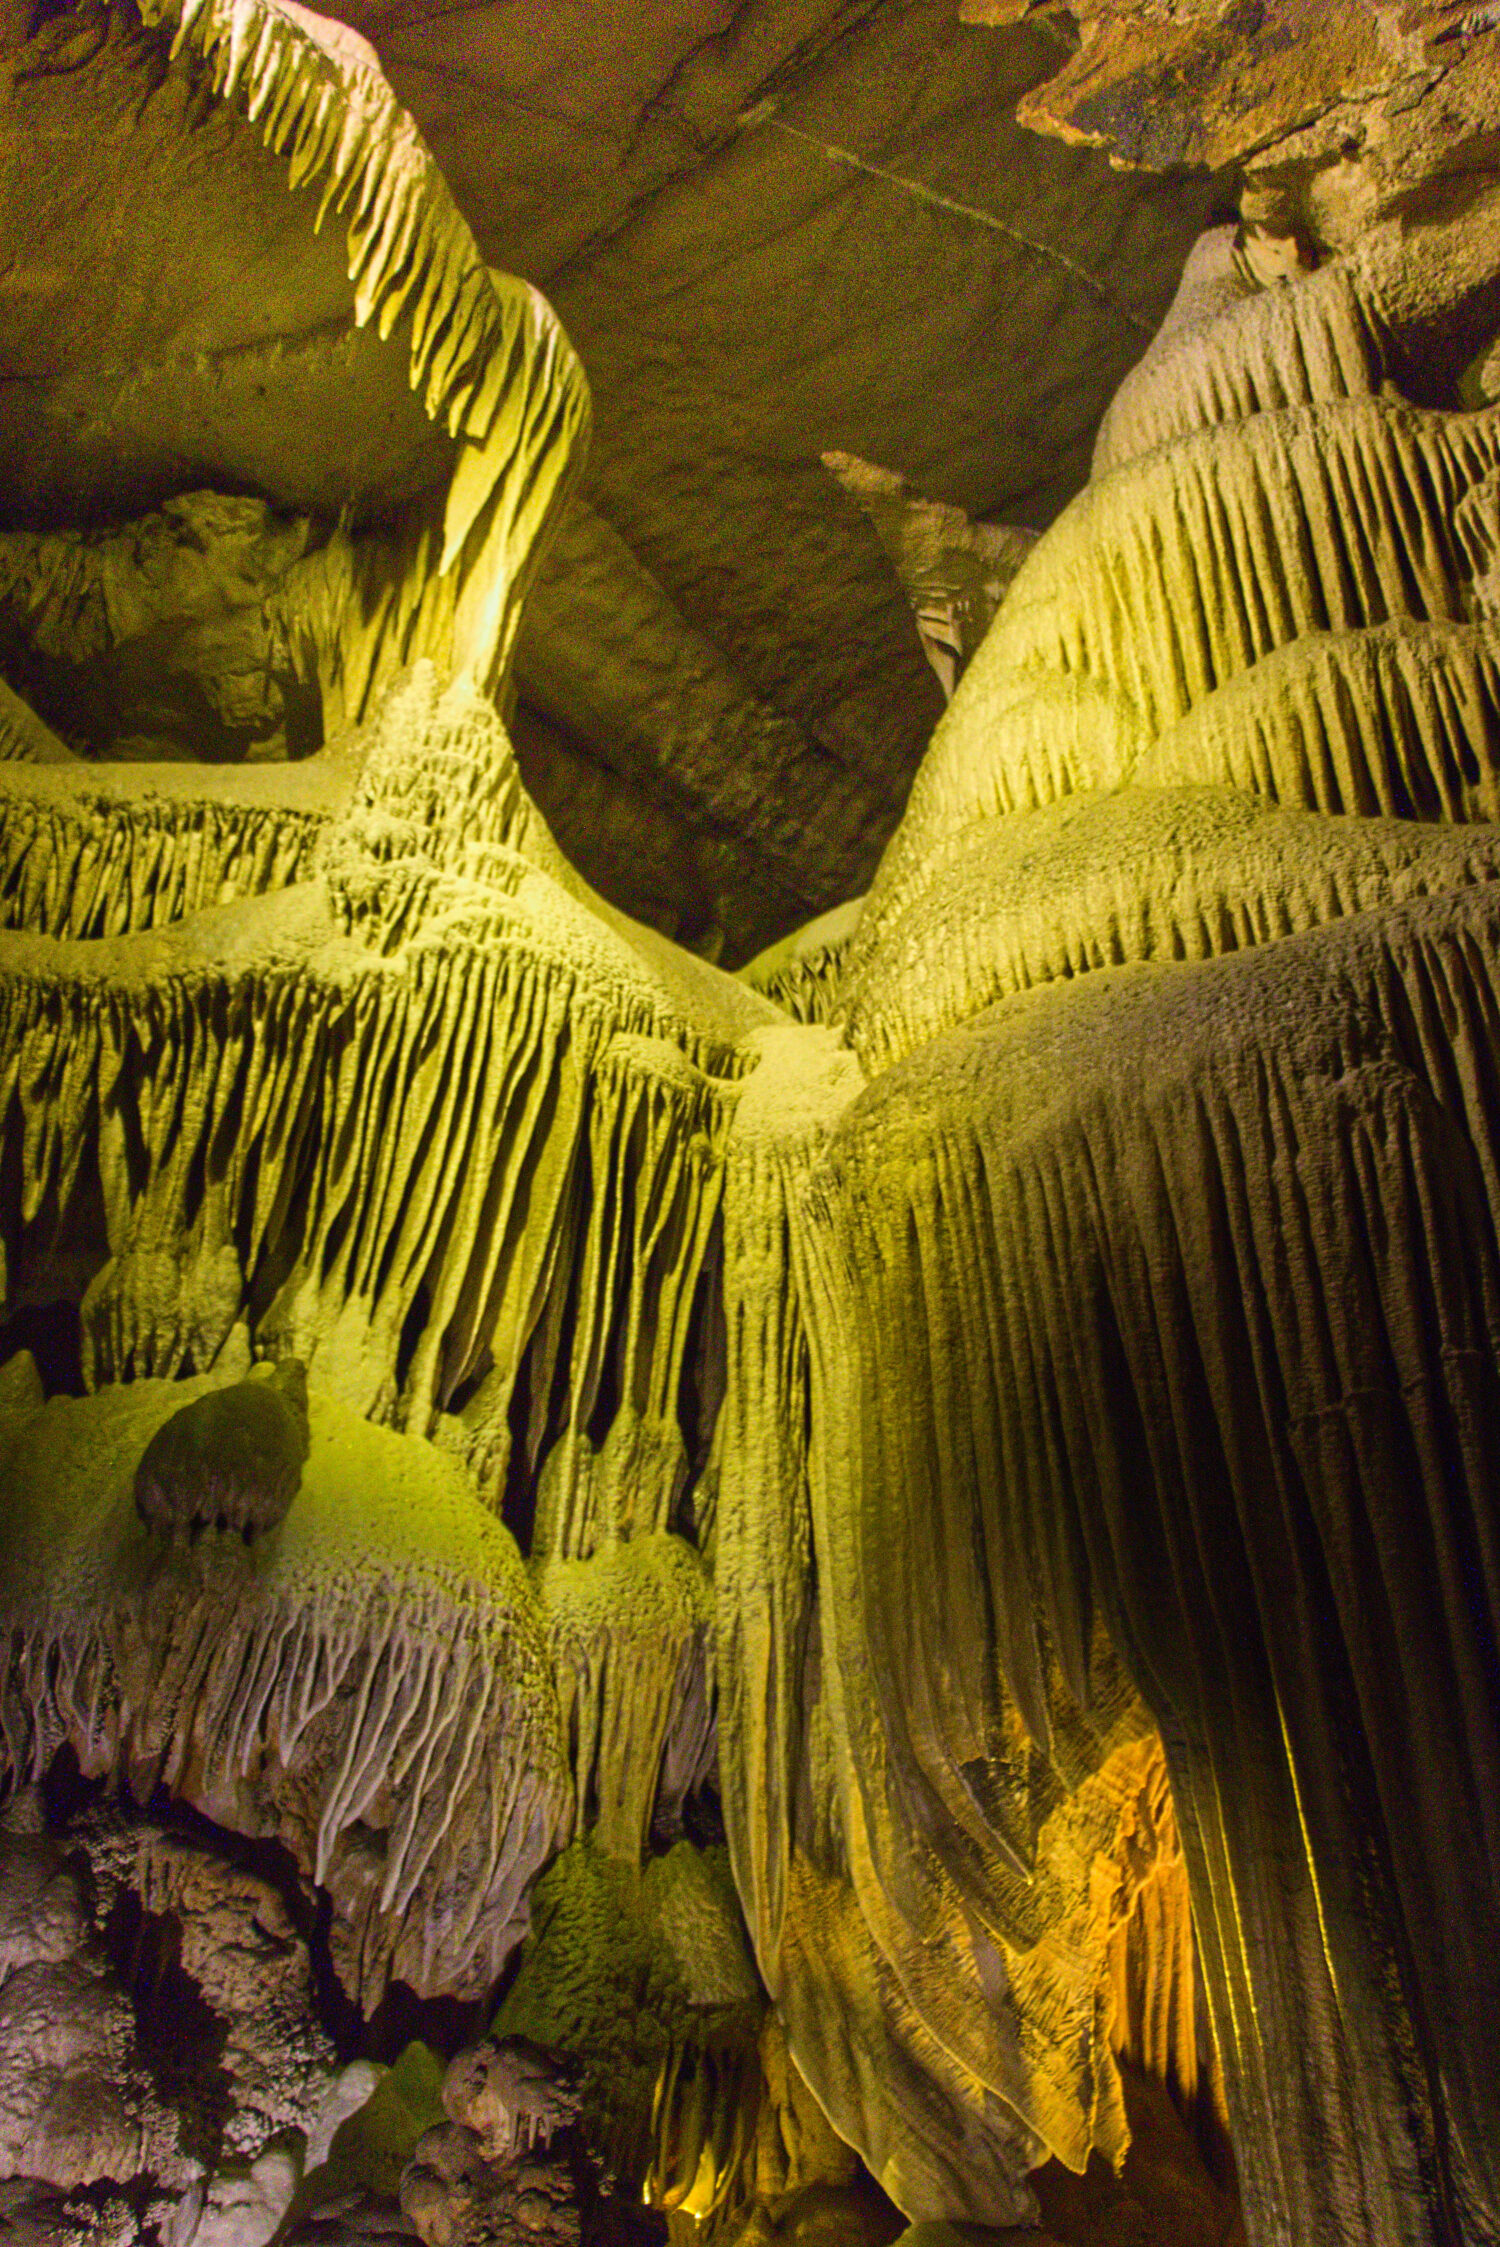 Alcune affascinanti immagini dall'interno di una grotta nel Sequoia National Park